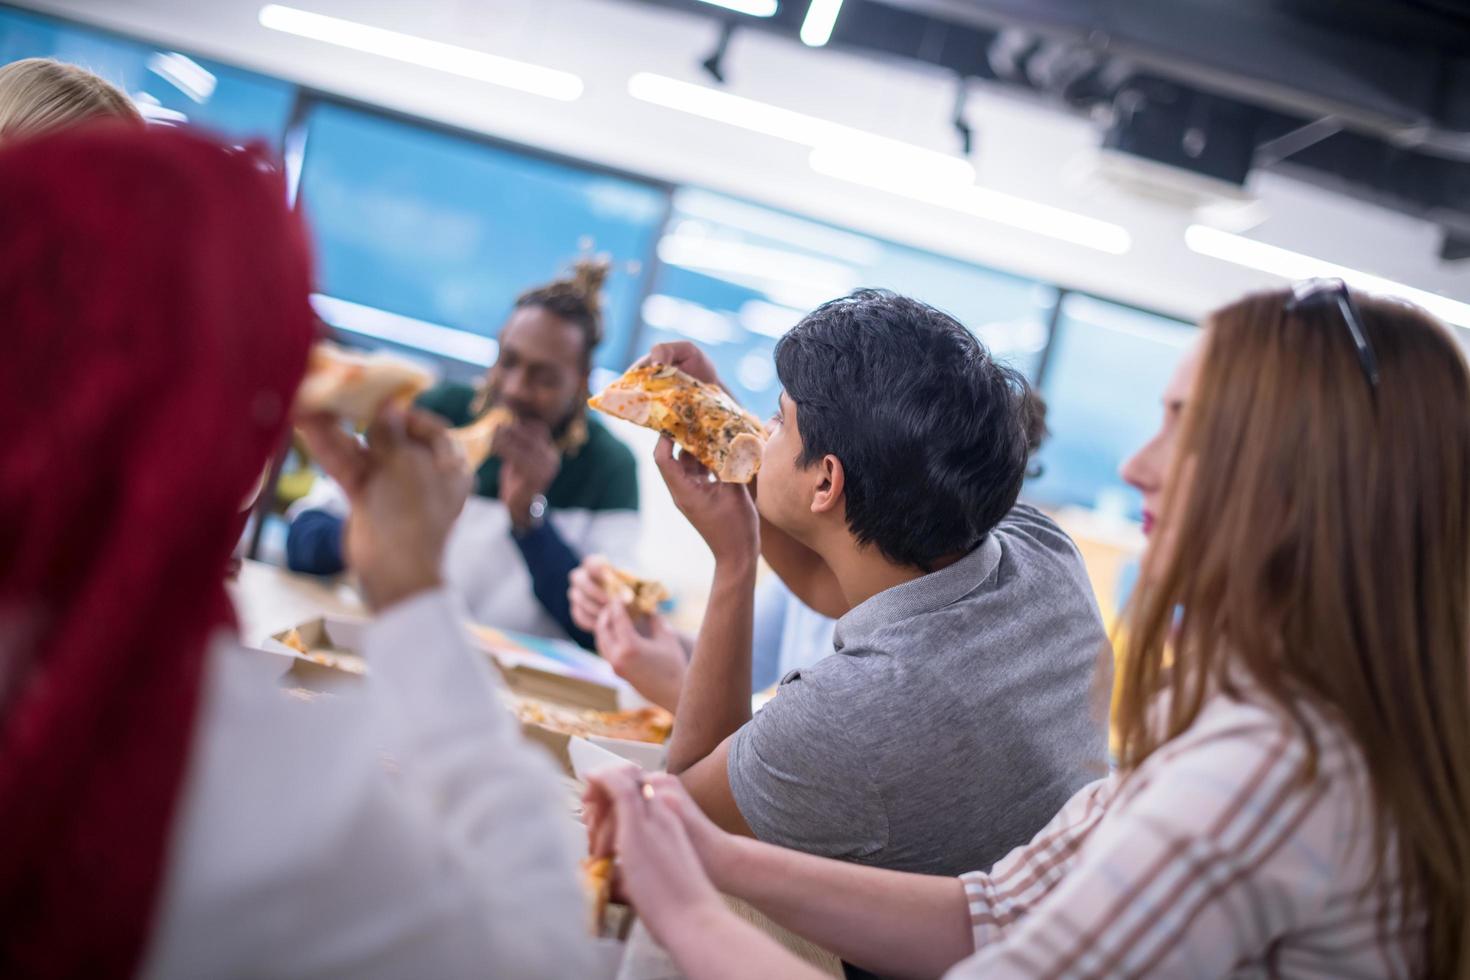 équipe commerciale multiethnique mangeant de la pizza photo